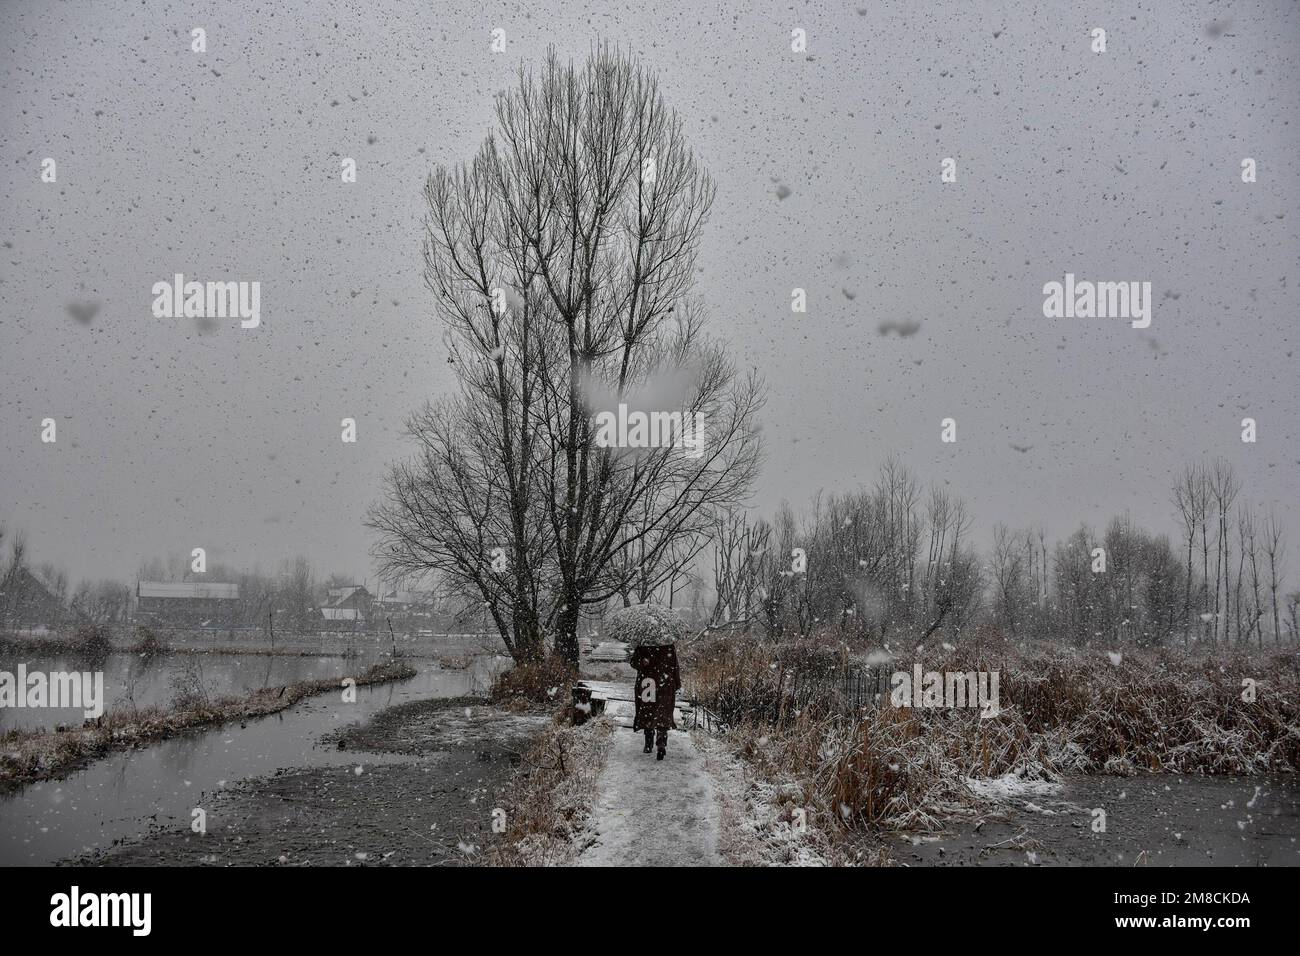 Un uomo tiene un ombrello mentre cammina attraverso il ponte pedonale della strada durante le nevicate. Parti della valle di Kashmir compreso Srinagar ha ricevuto nevicate che portano alla chiusura della vitale Srinagar-Jammu autostrada nazionale e la cancellazione delle operazioni di volo, funzionari qui ha detto. Foto Stock